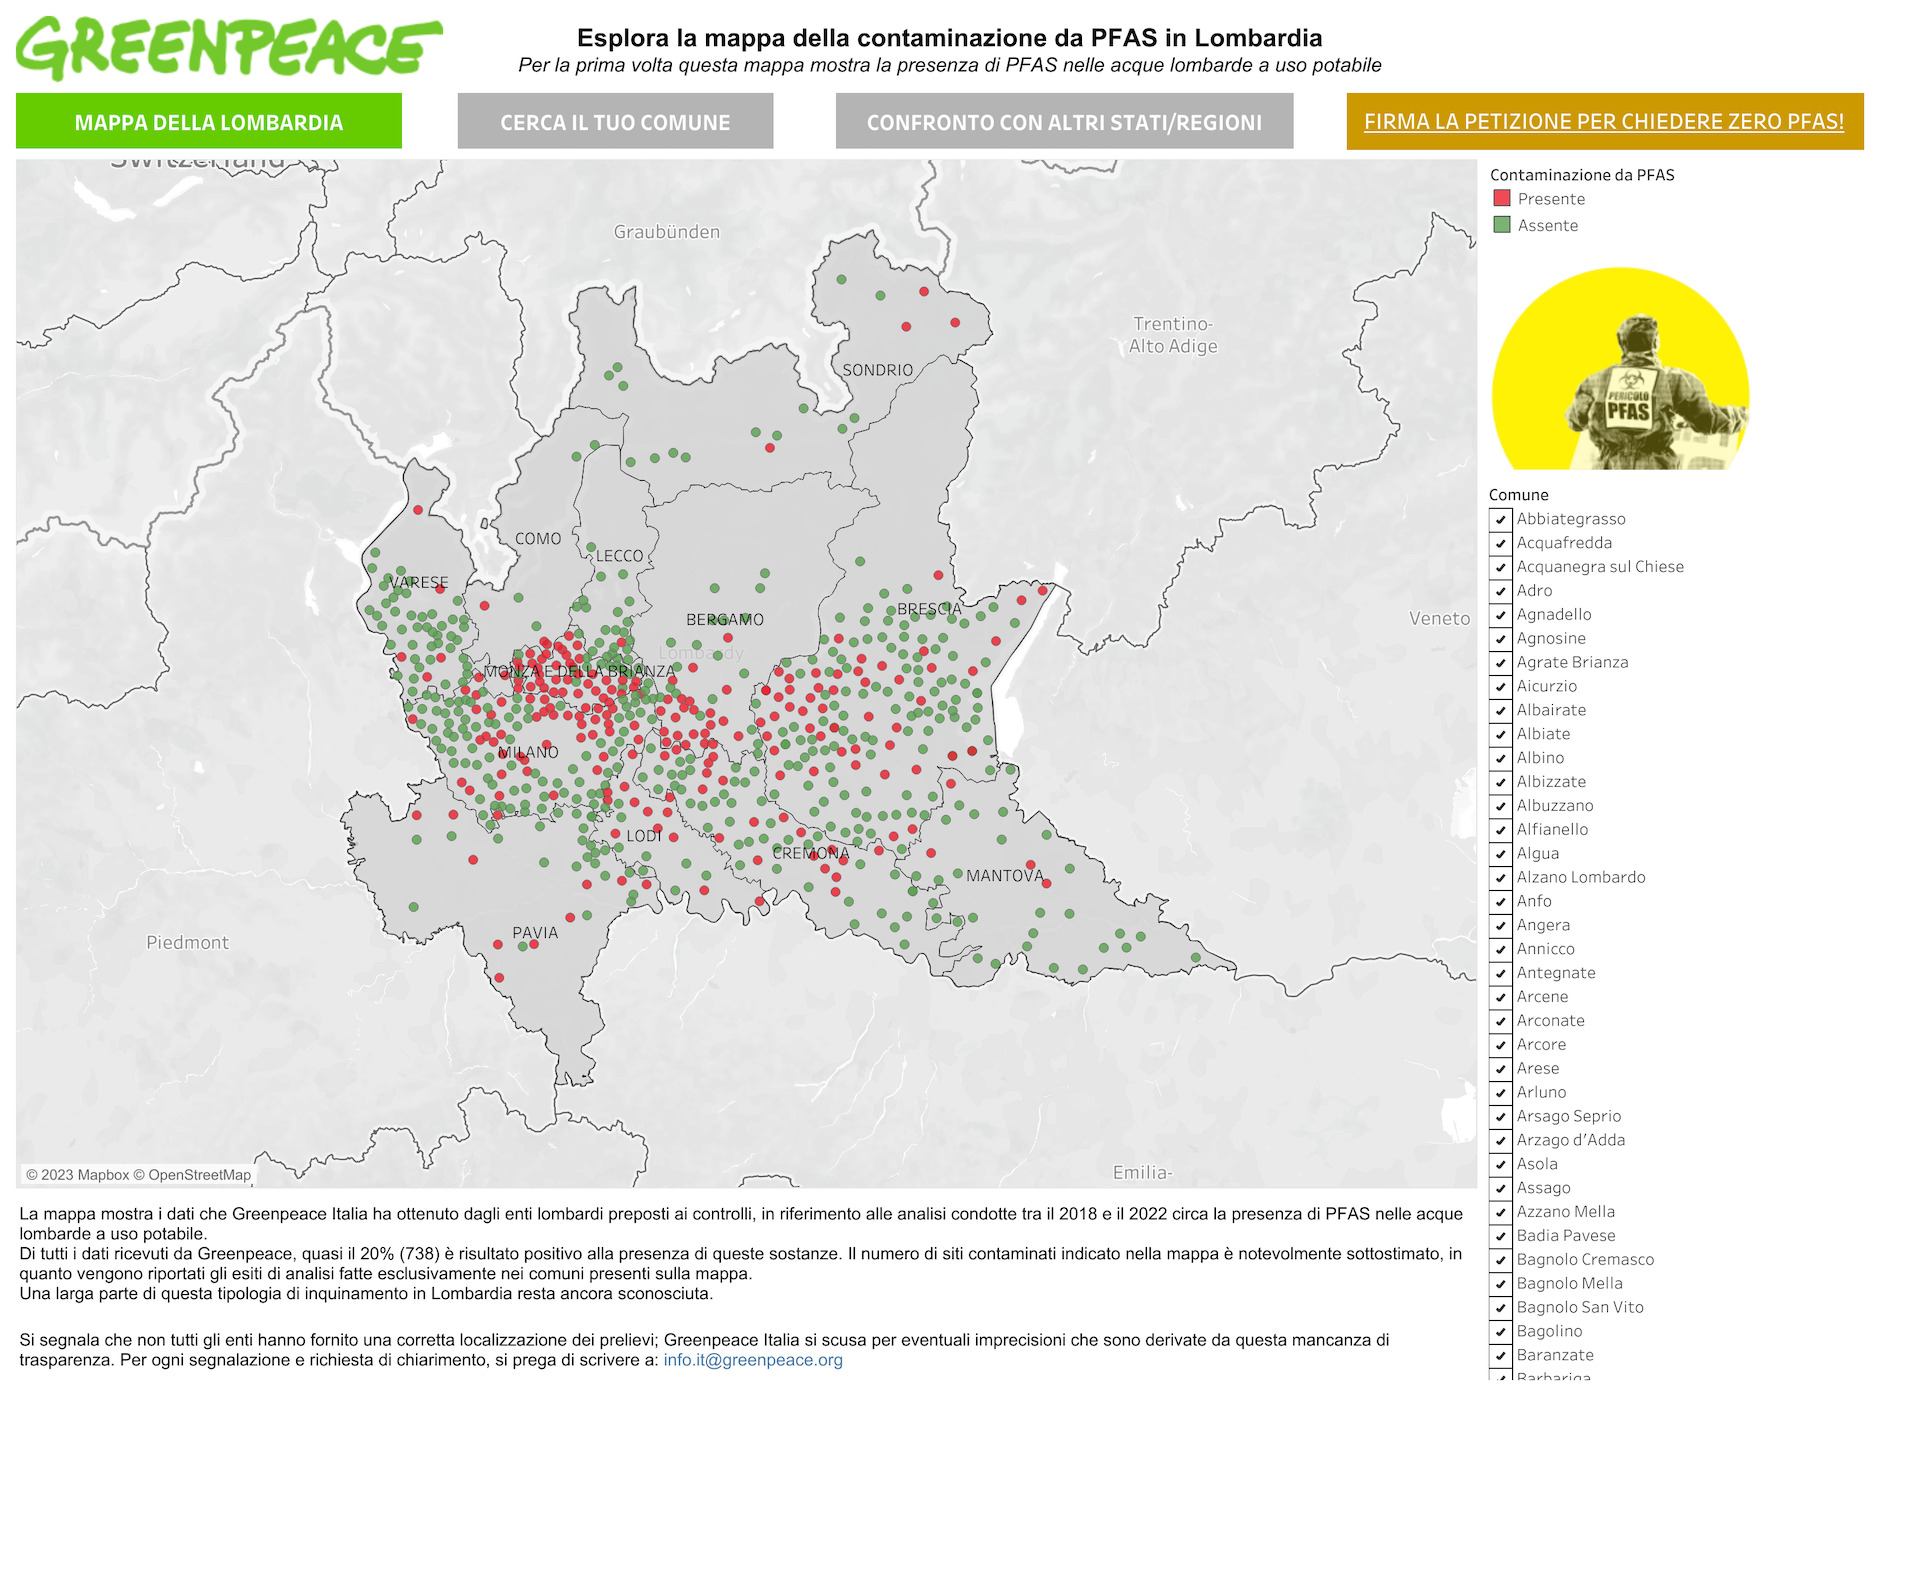 PFAS in Lombardia, indagine di Greenpeace